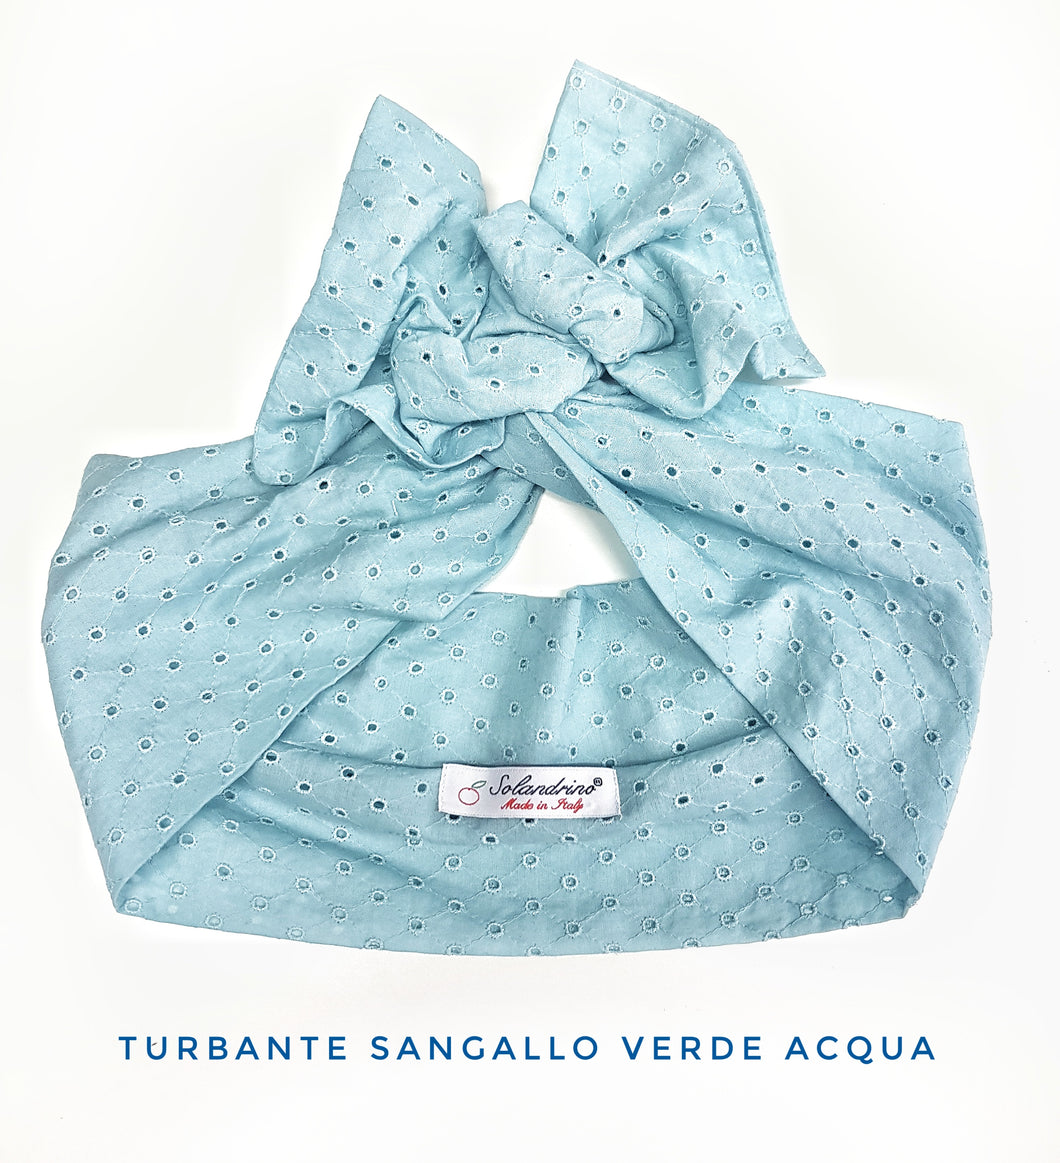 Turbante in Sangallo verde acqua Fashion traforato fascia capelli in cotone design made in Italy striped